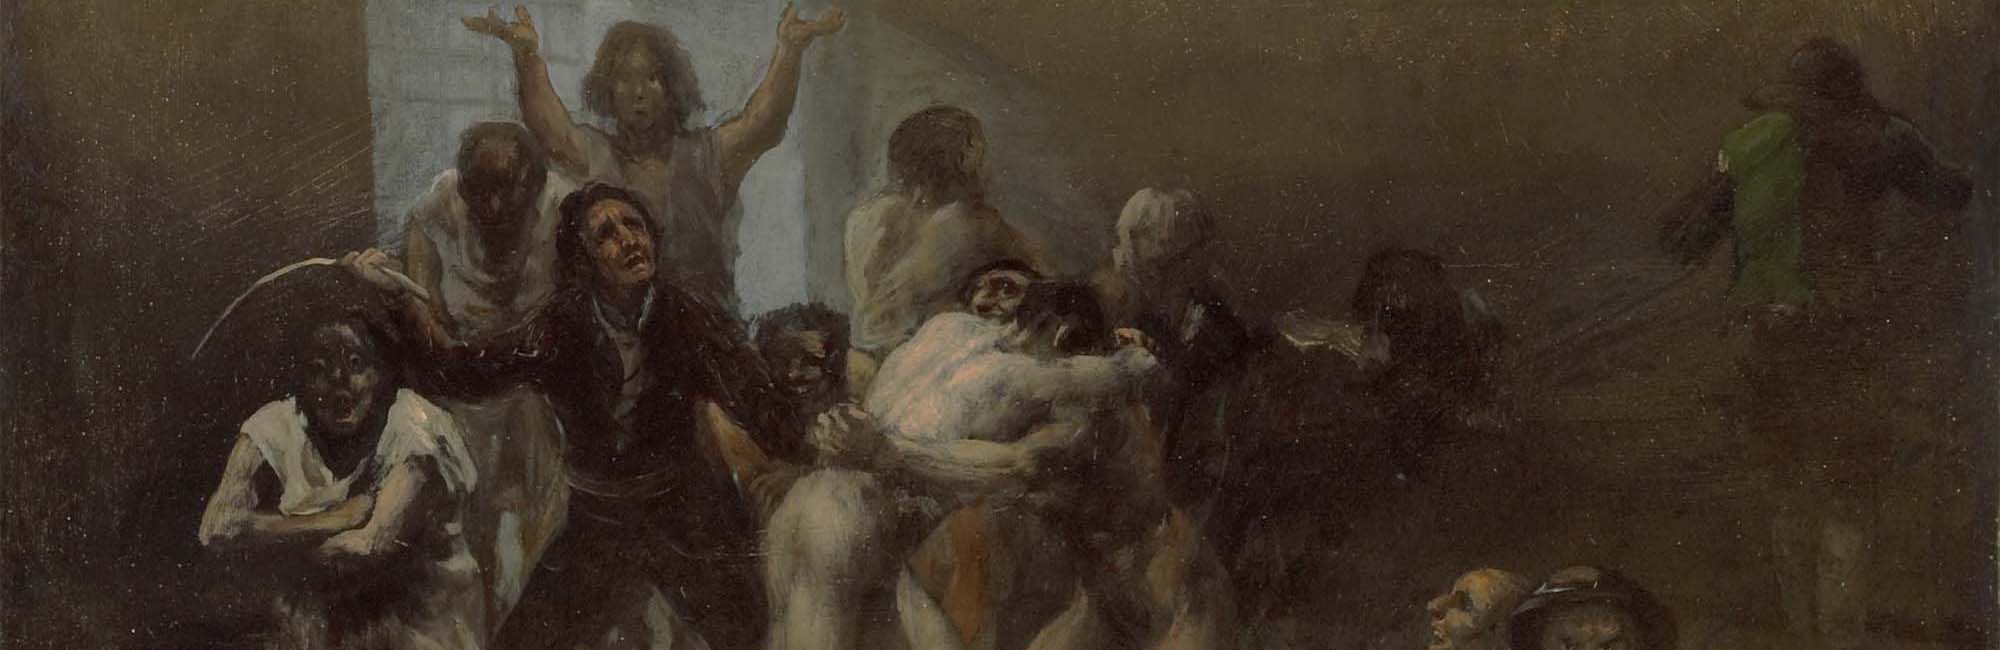 Cuadro Corral de locos de Francisco de Goya. 